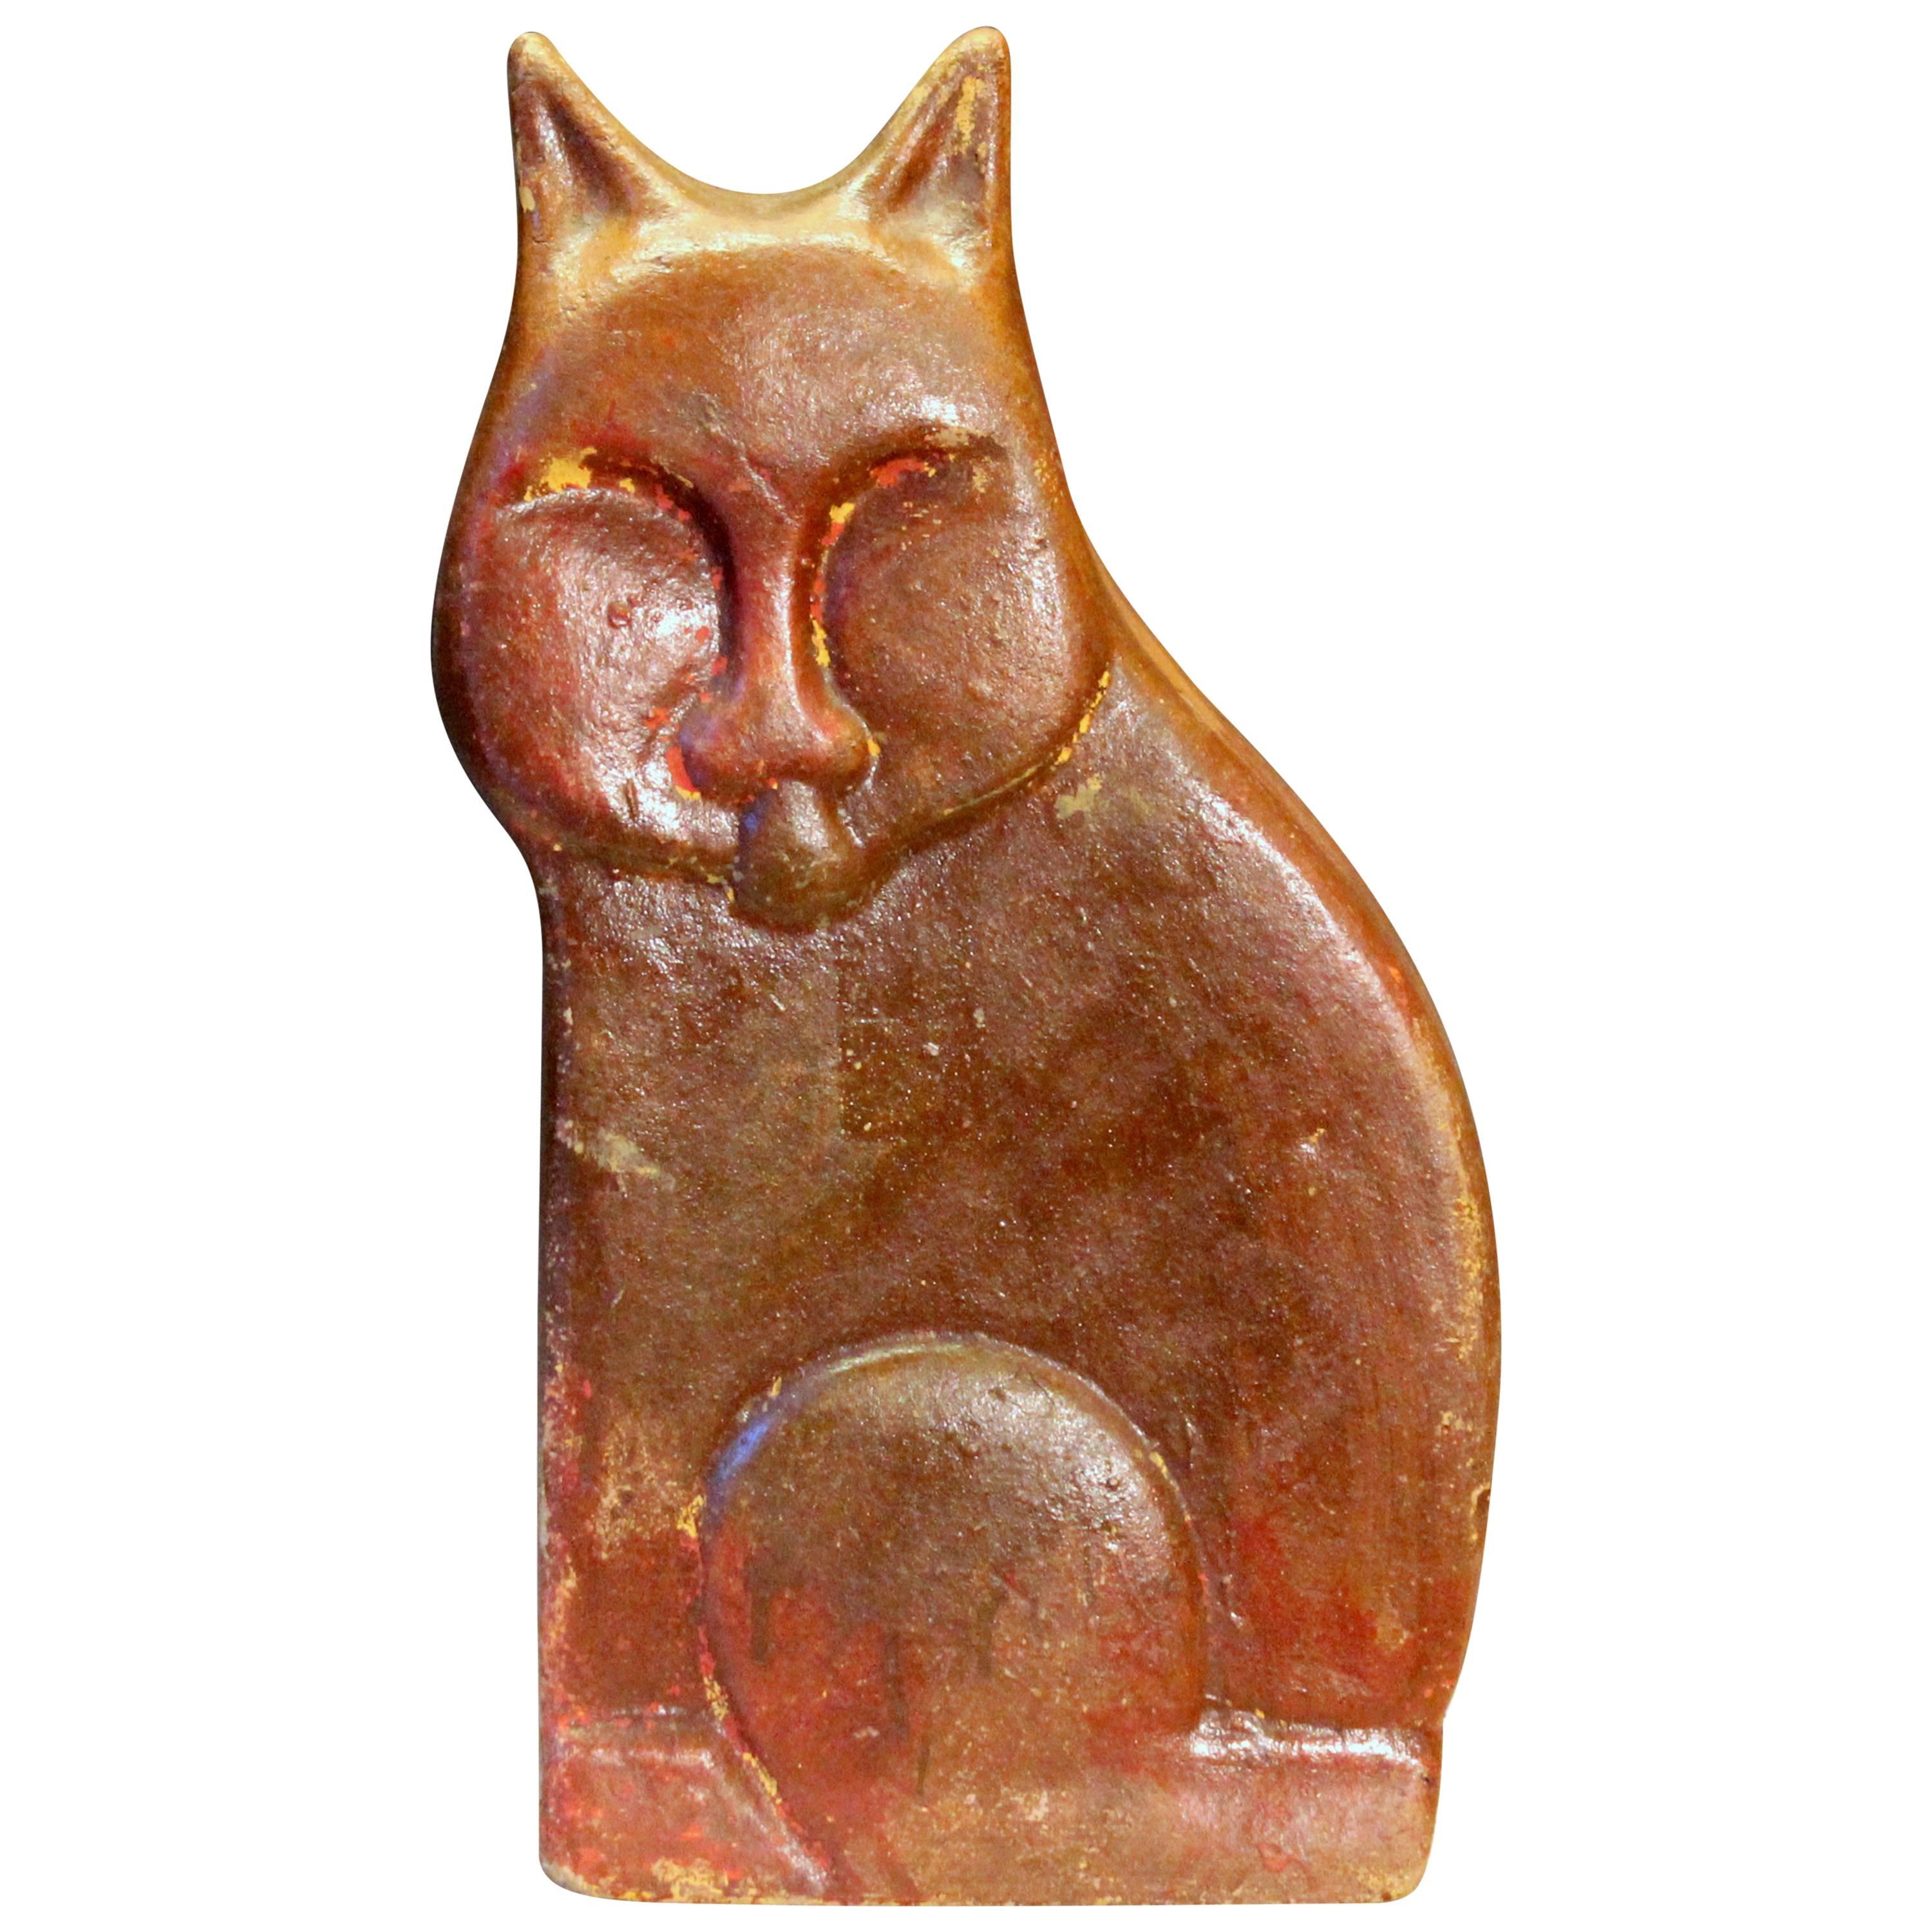 Large Vintage or Antique Folk Art Pottery Sewer Tile Type Cat Figure Sculpture